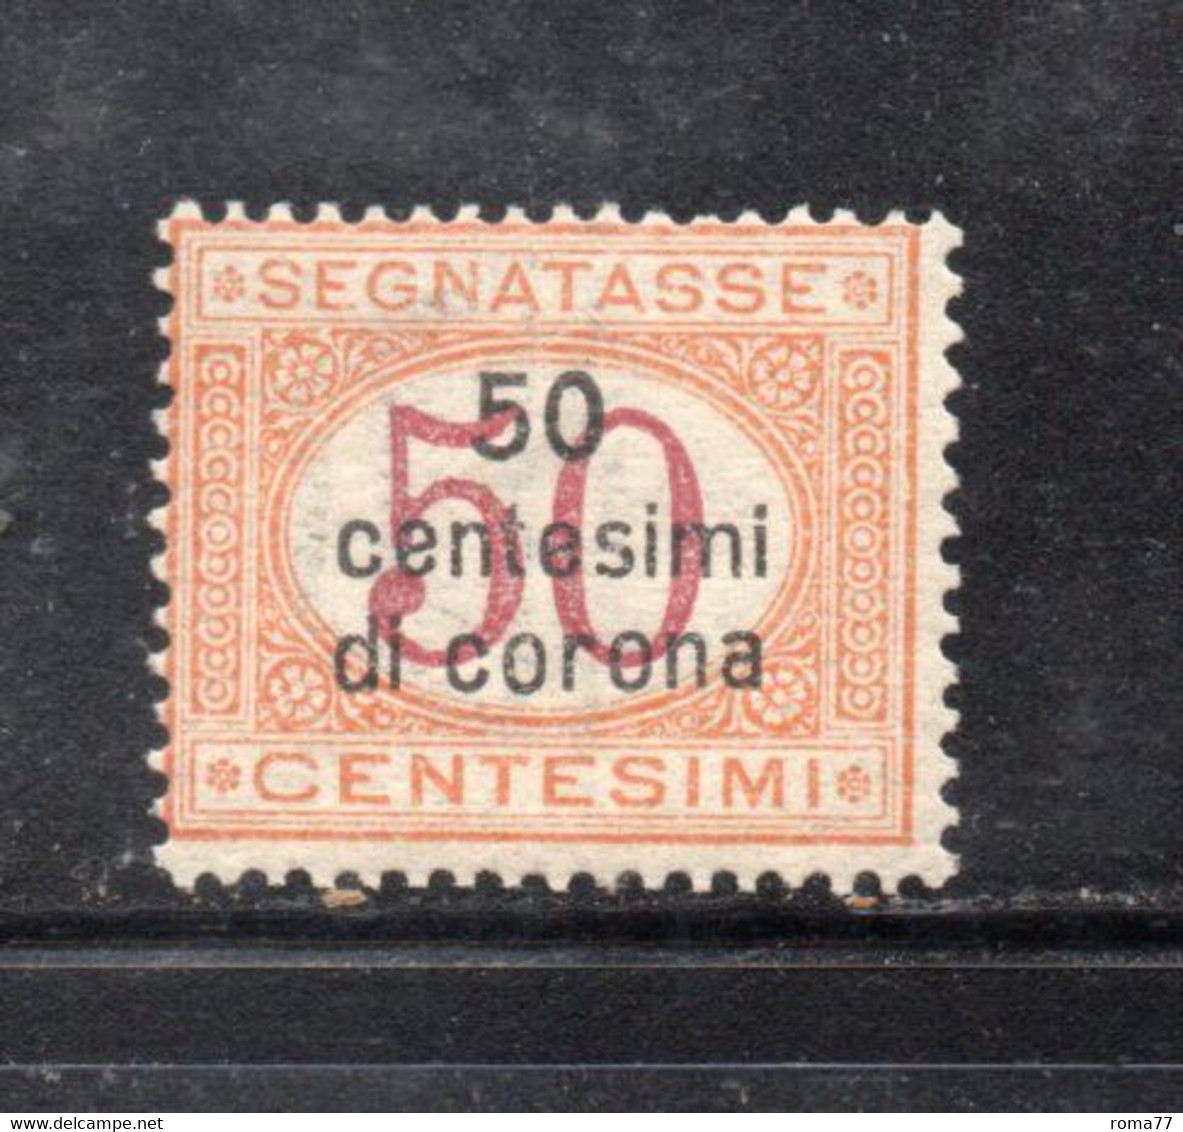 Y2274 - DALMAZIA 1922, Segnatasse Il N. 1  Con Gomma Integra  ***  MNH - Dalmatien